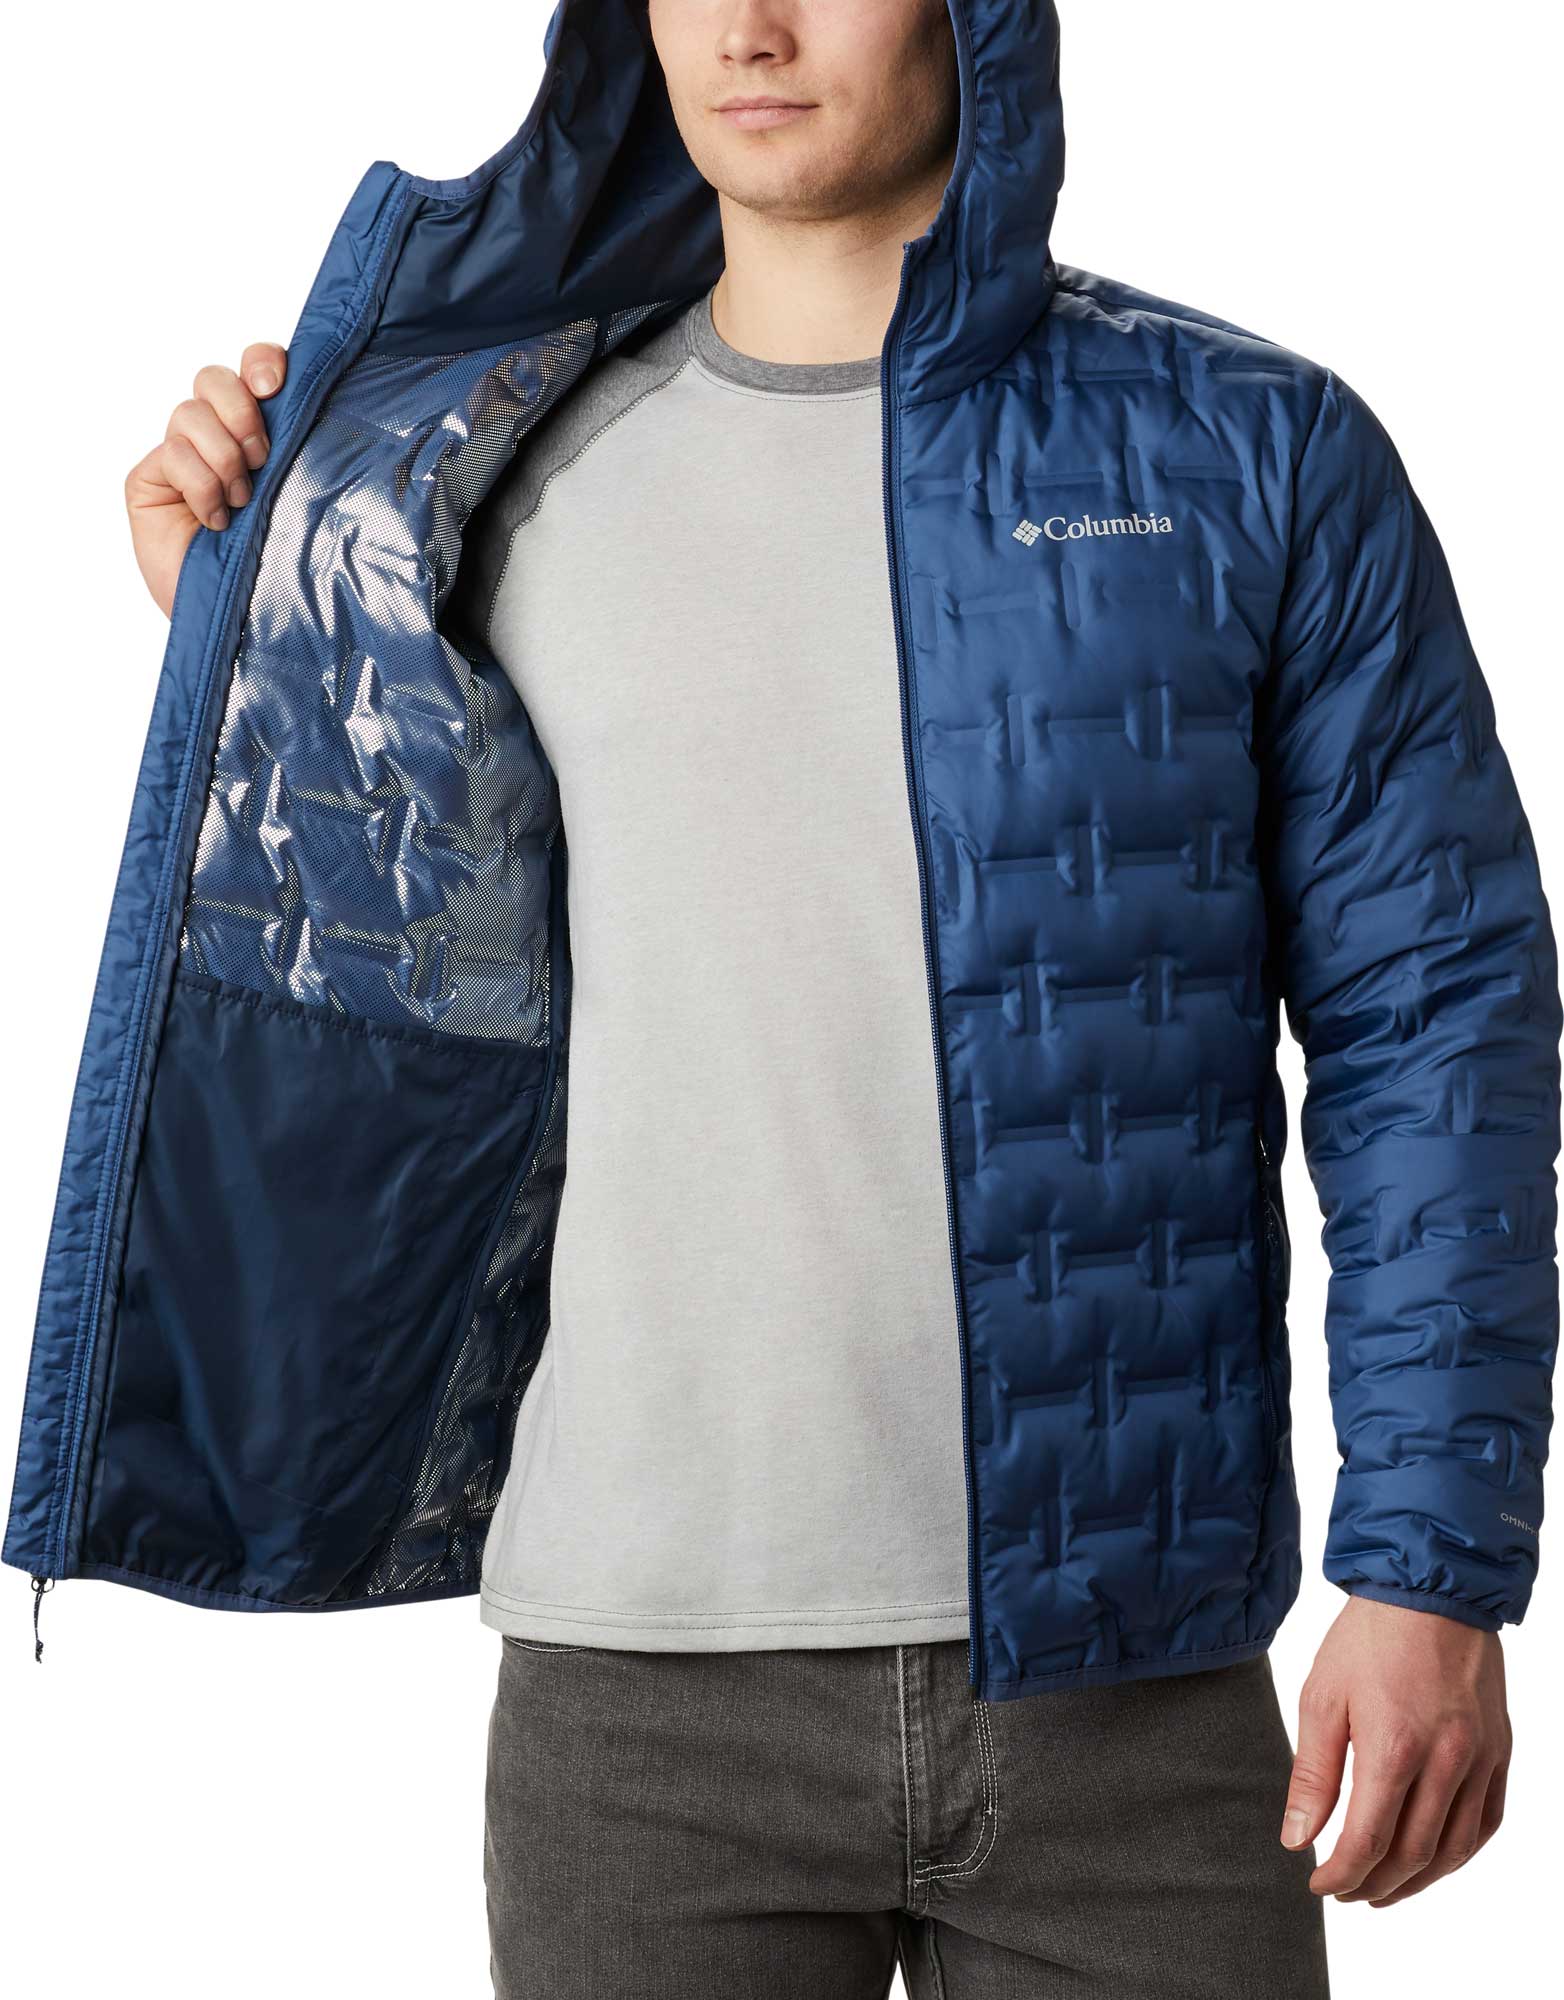 Men's winter jacket